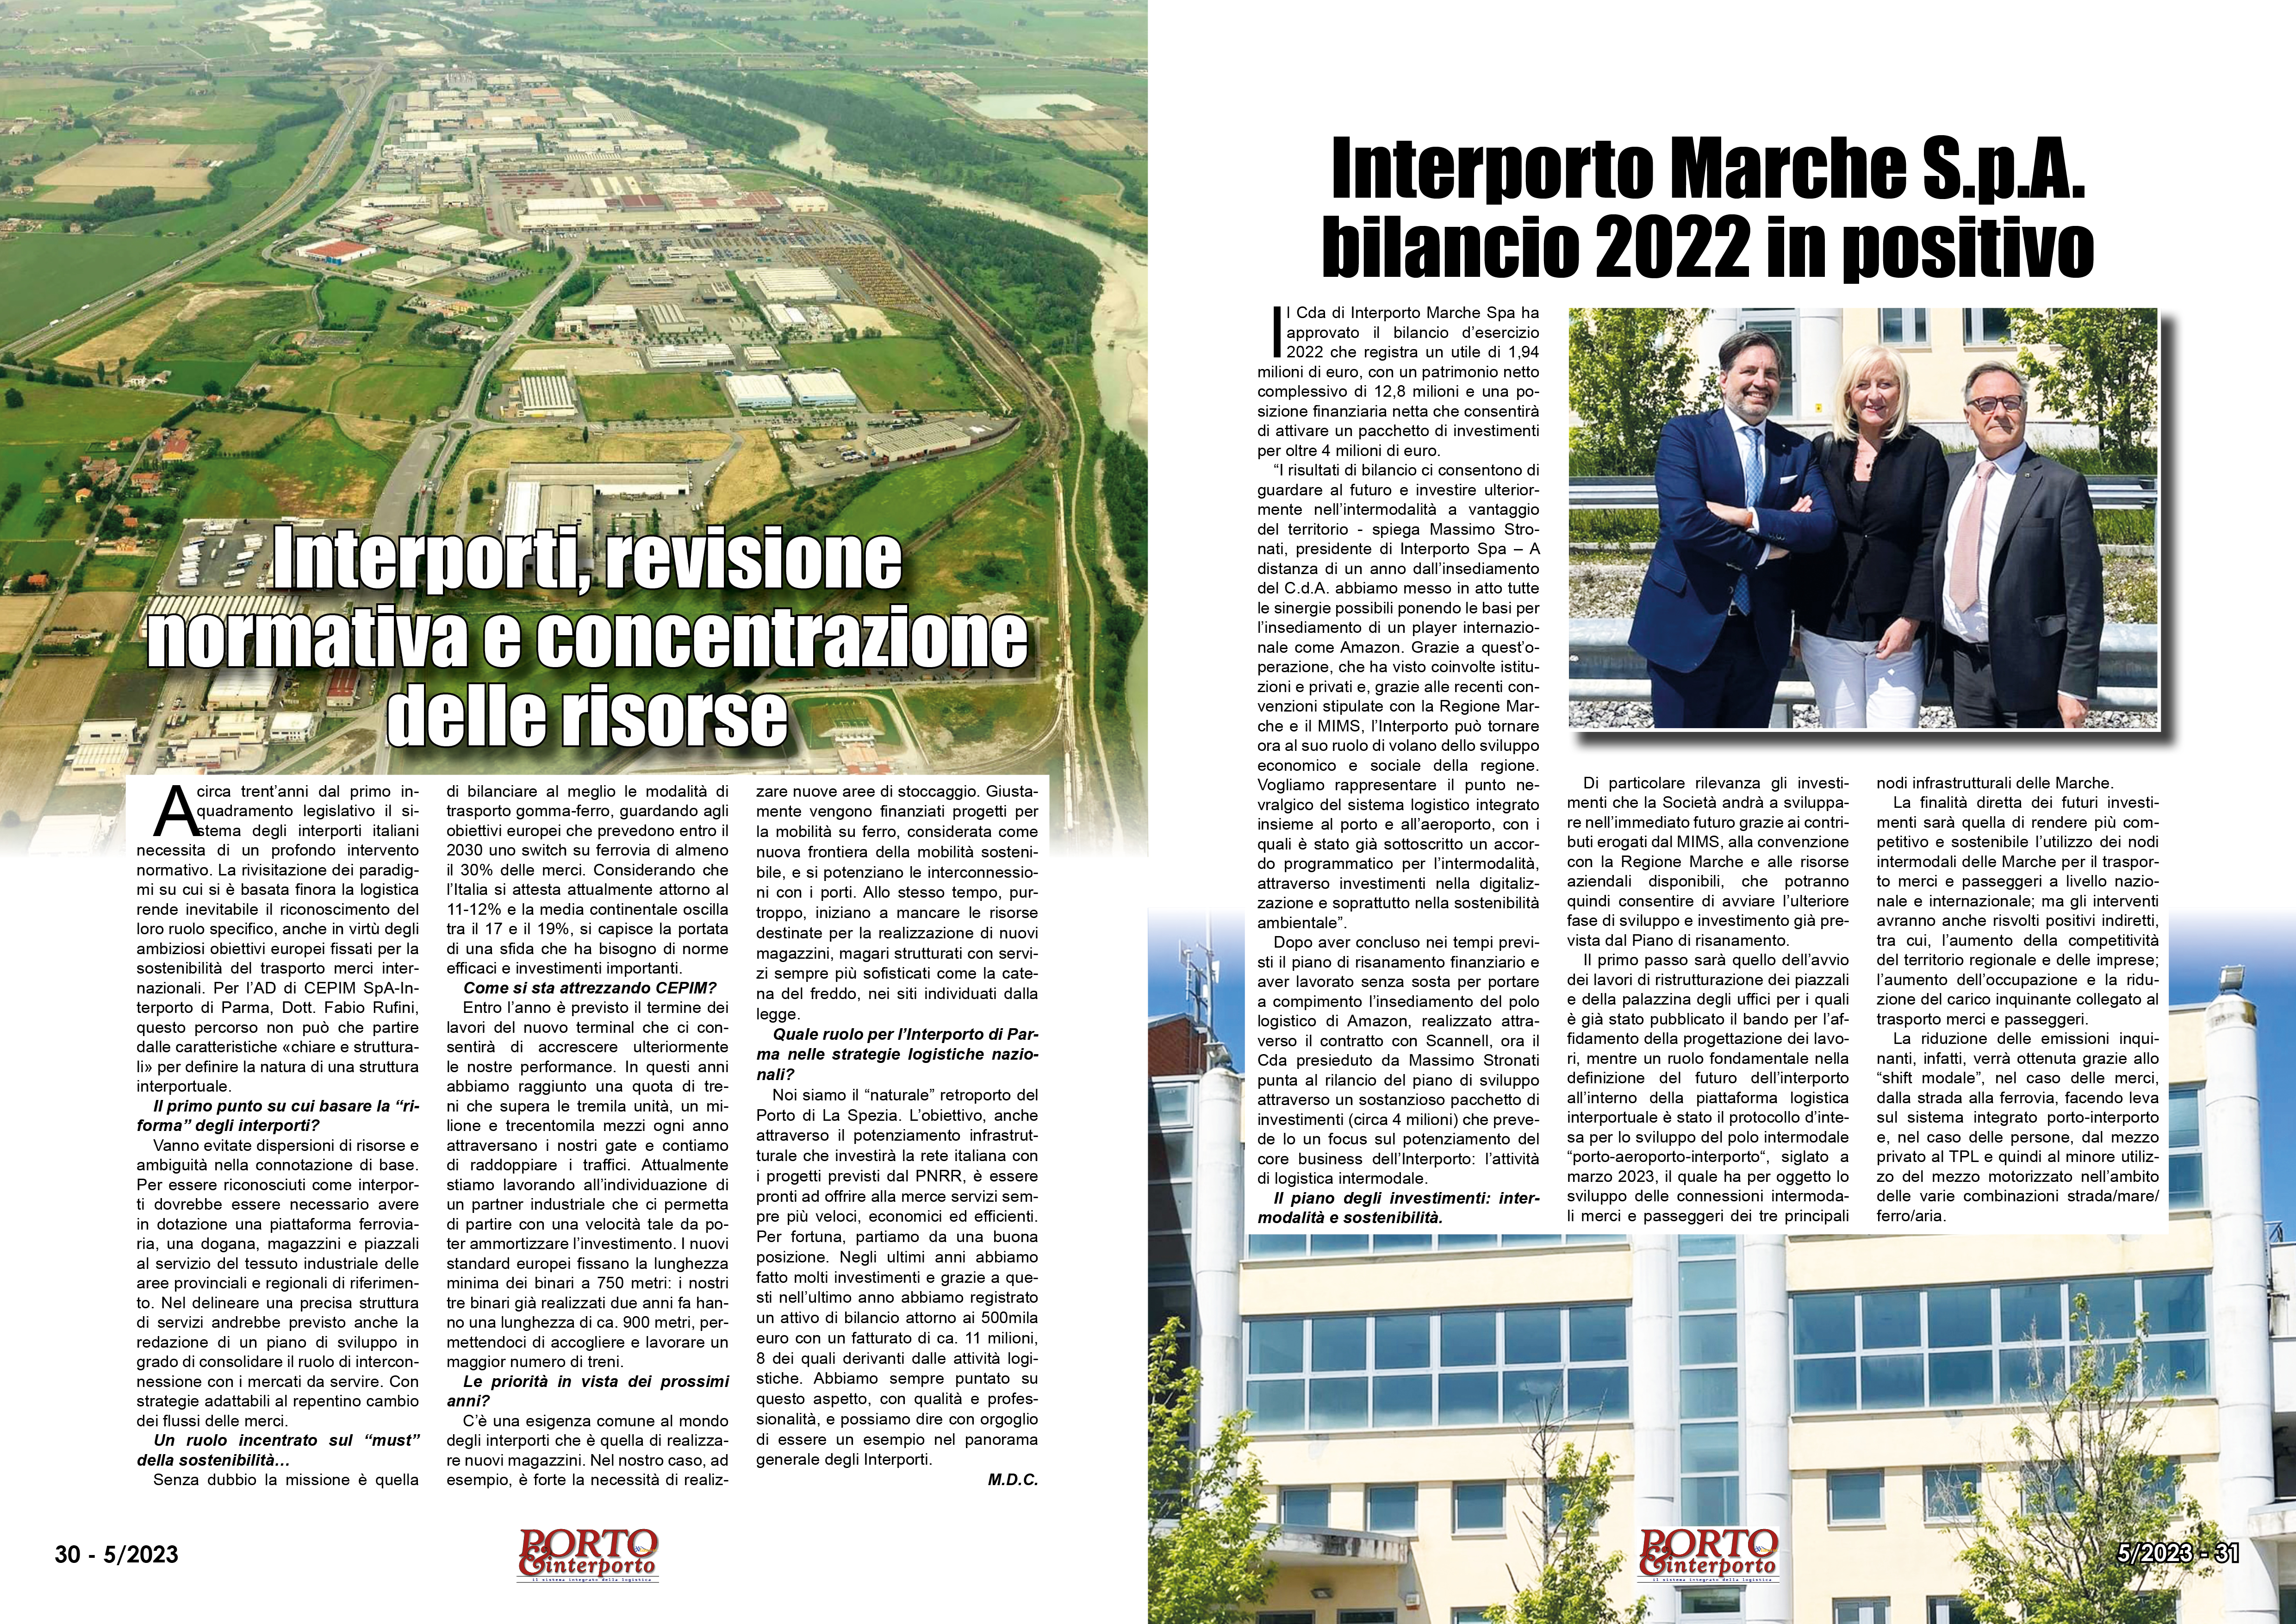 MAGGIO 2023 PAG. 30 - Interporti, revisione normativa e concentrazione delle risorse